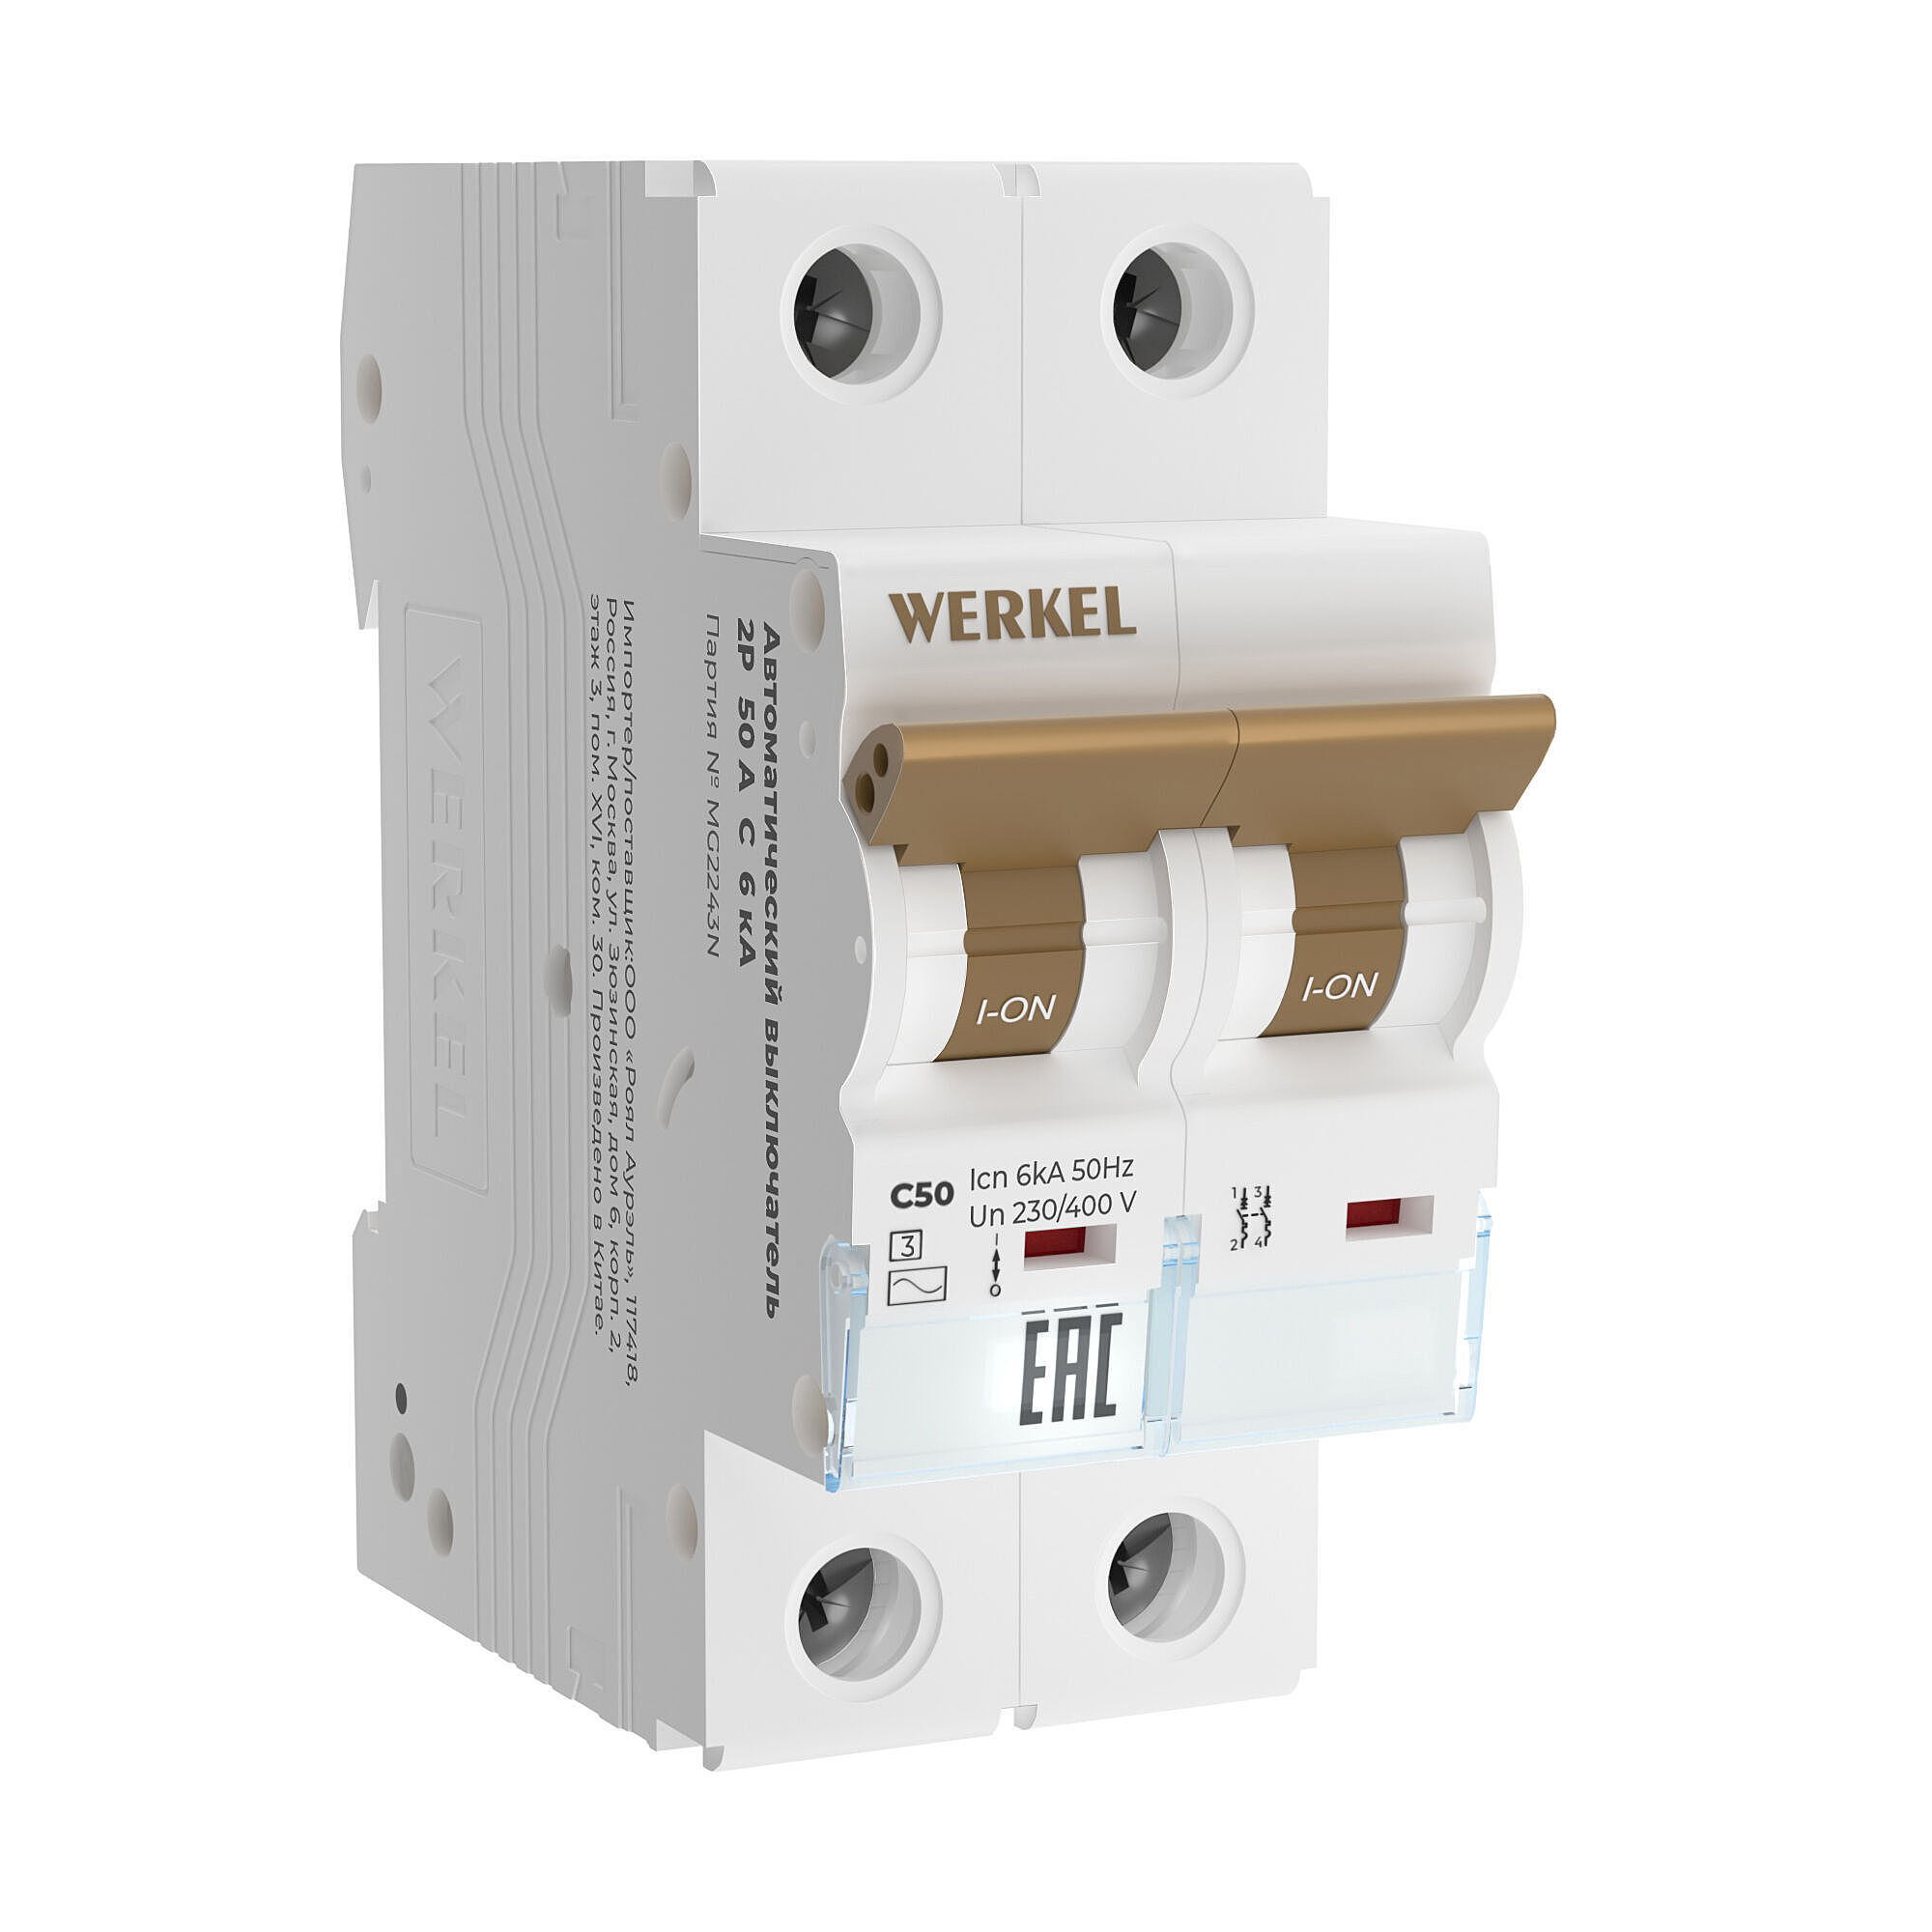   Werkel W902P506 /  